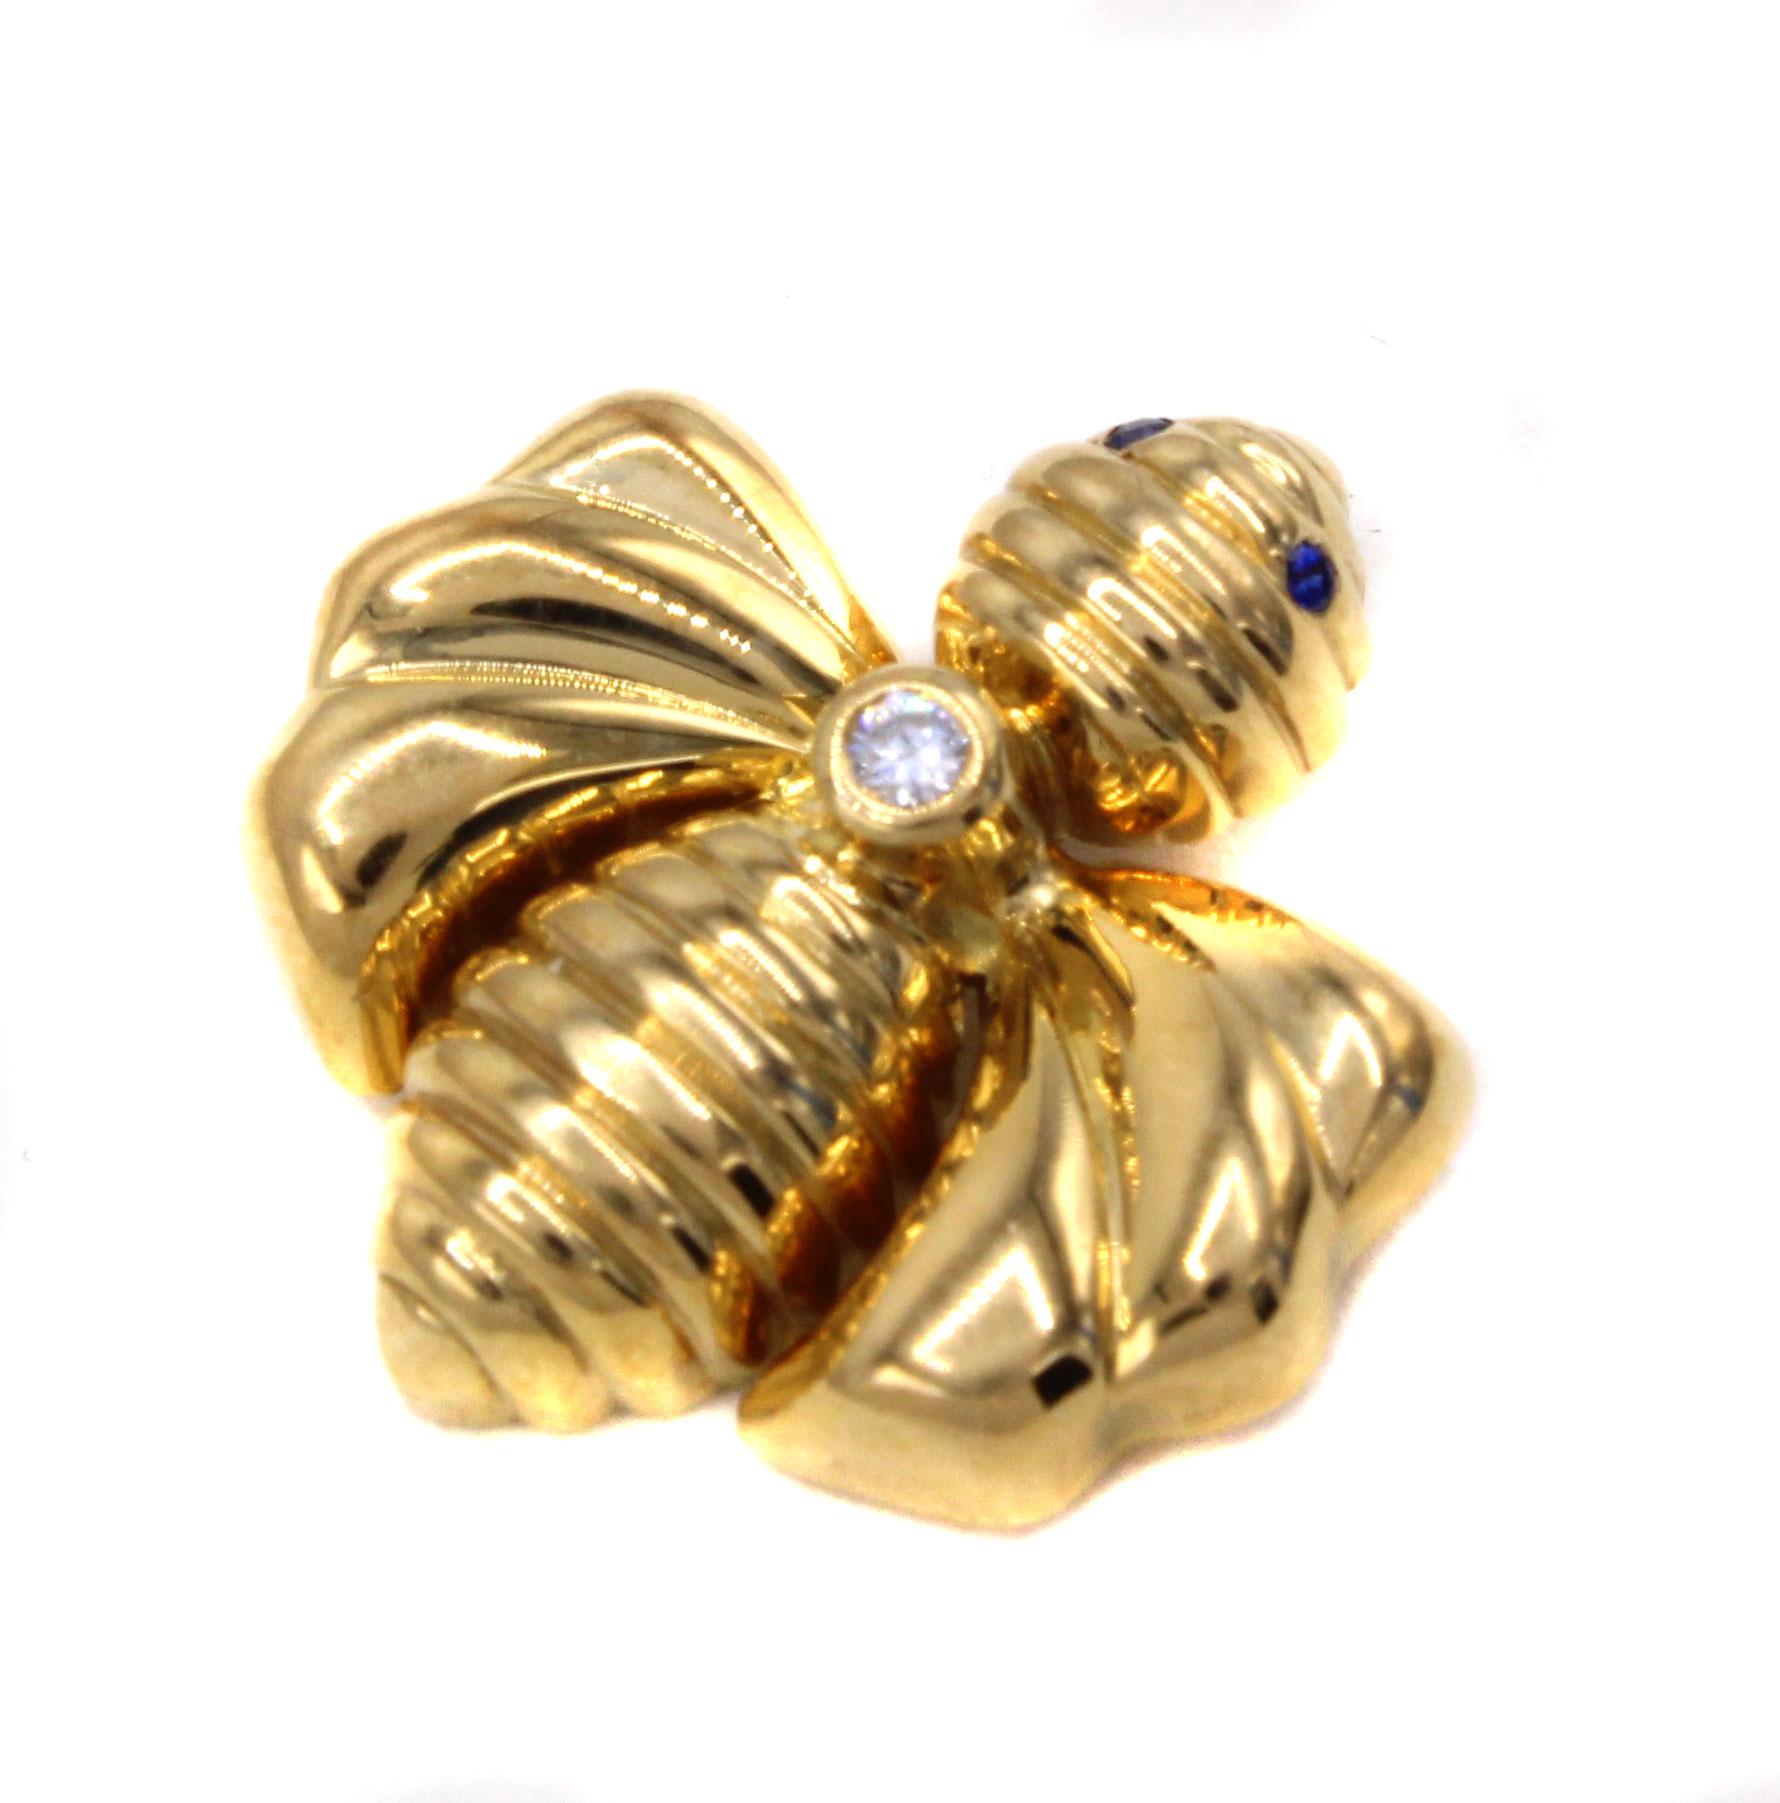 Diese von dem renommierten französischen Juwelier Chaumet entworfenen und meisterhaft handgefertigten Anhänger aus 18 Karat Gold, die eine Hummel darstellen, sind bezaubernde und äußerst tragbare Schmuckstücke. Zwischen Kopf und Körper ist ein